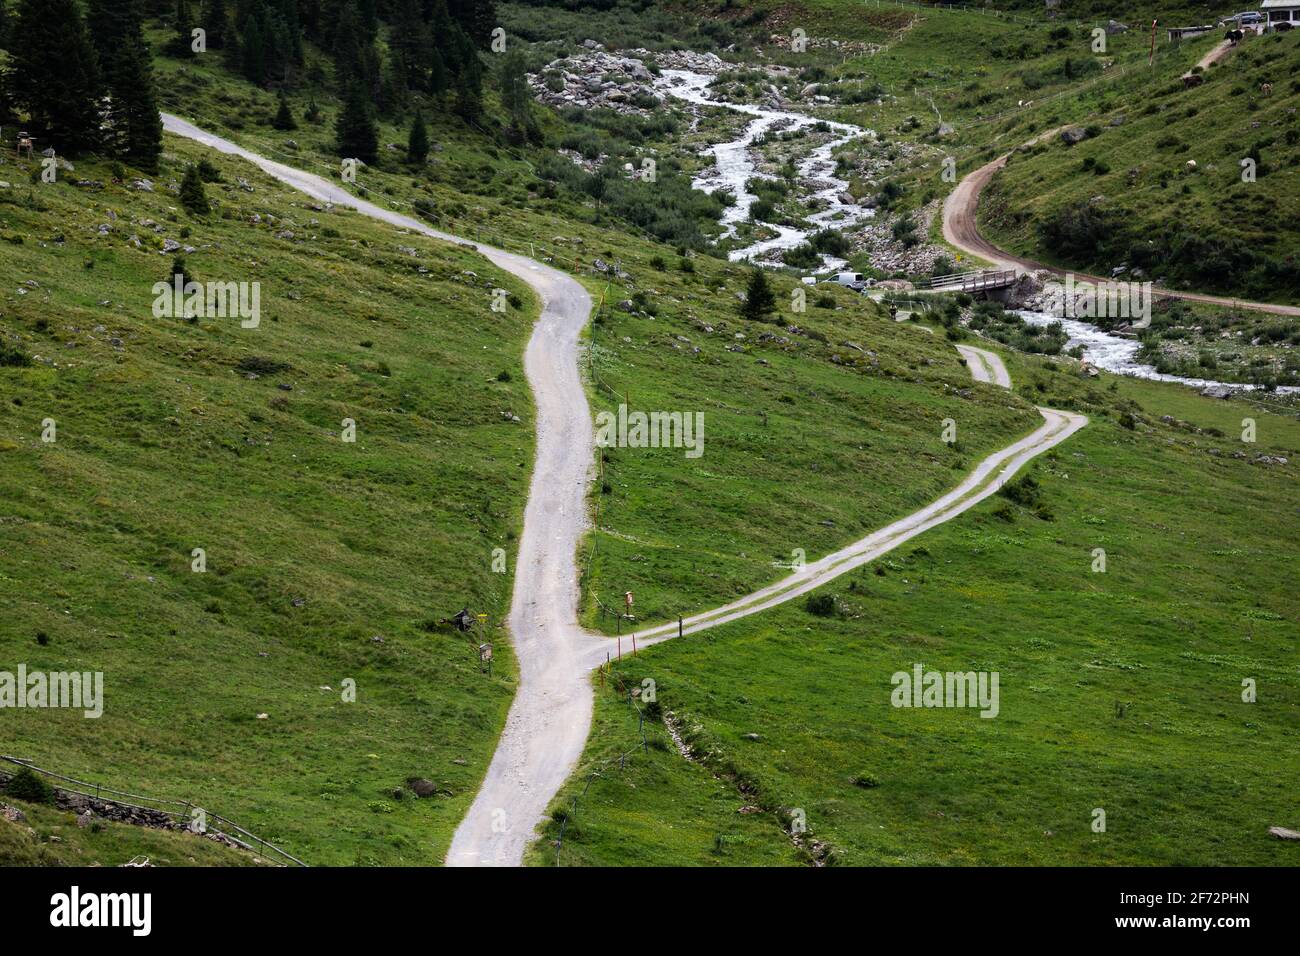 Carretera dividida en dos cerca del río Moosbach a lo largo de la zona de senderismo Alpenrosenweg en Saint Anton am Arlberg, Austria Foto de stock